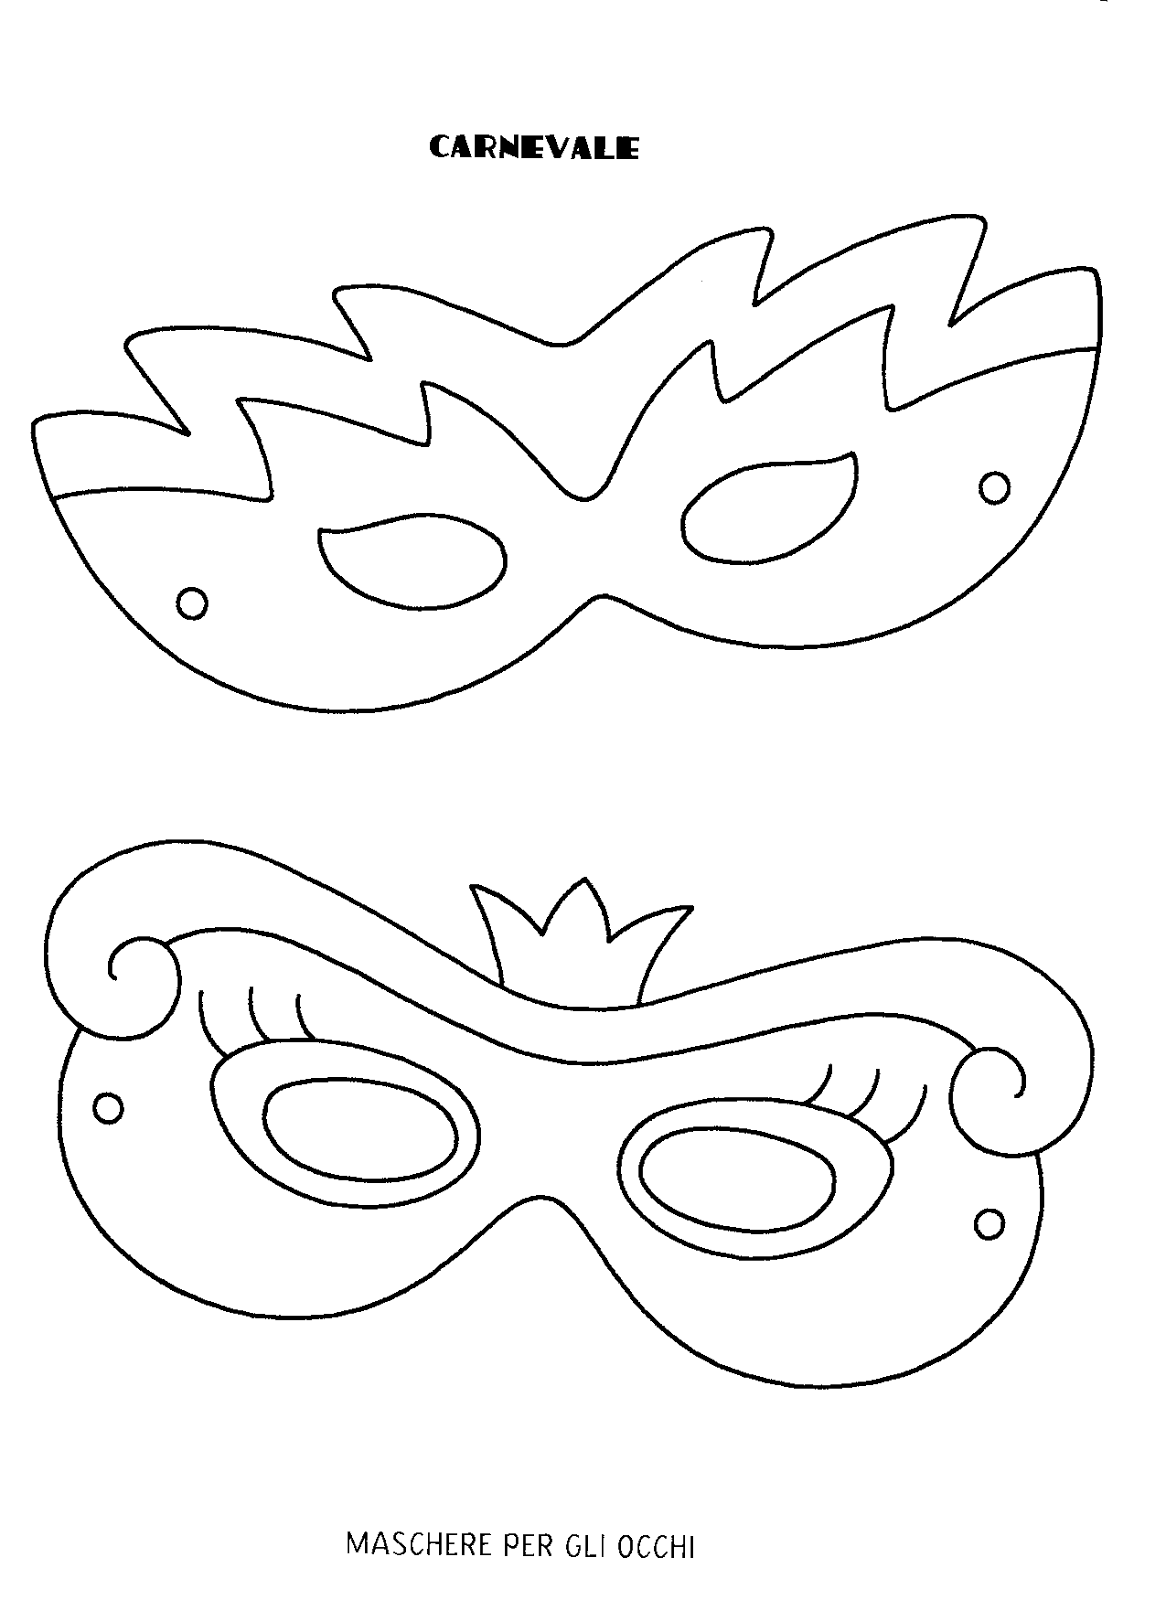 Детская театральная маска своими руками. Макет маски карнавальной. Карнавальные маски шаблоны для печати. Карнавальная маска трафарет. Маска трафарет для детей.